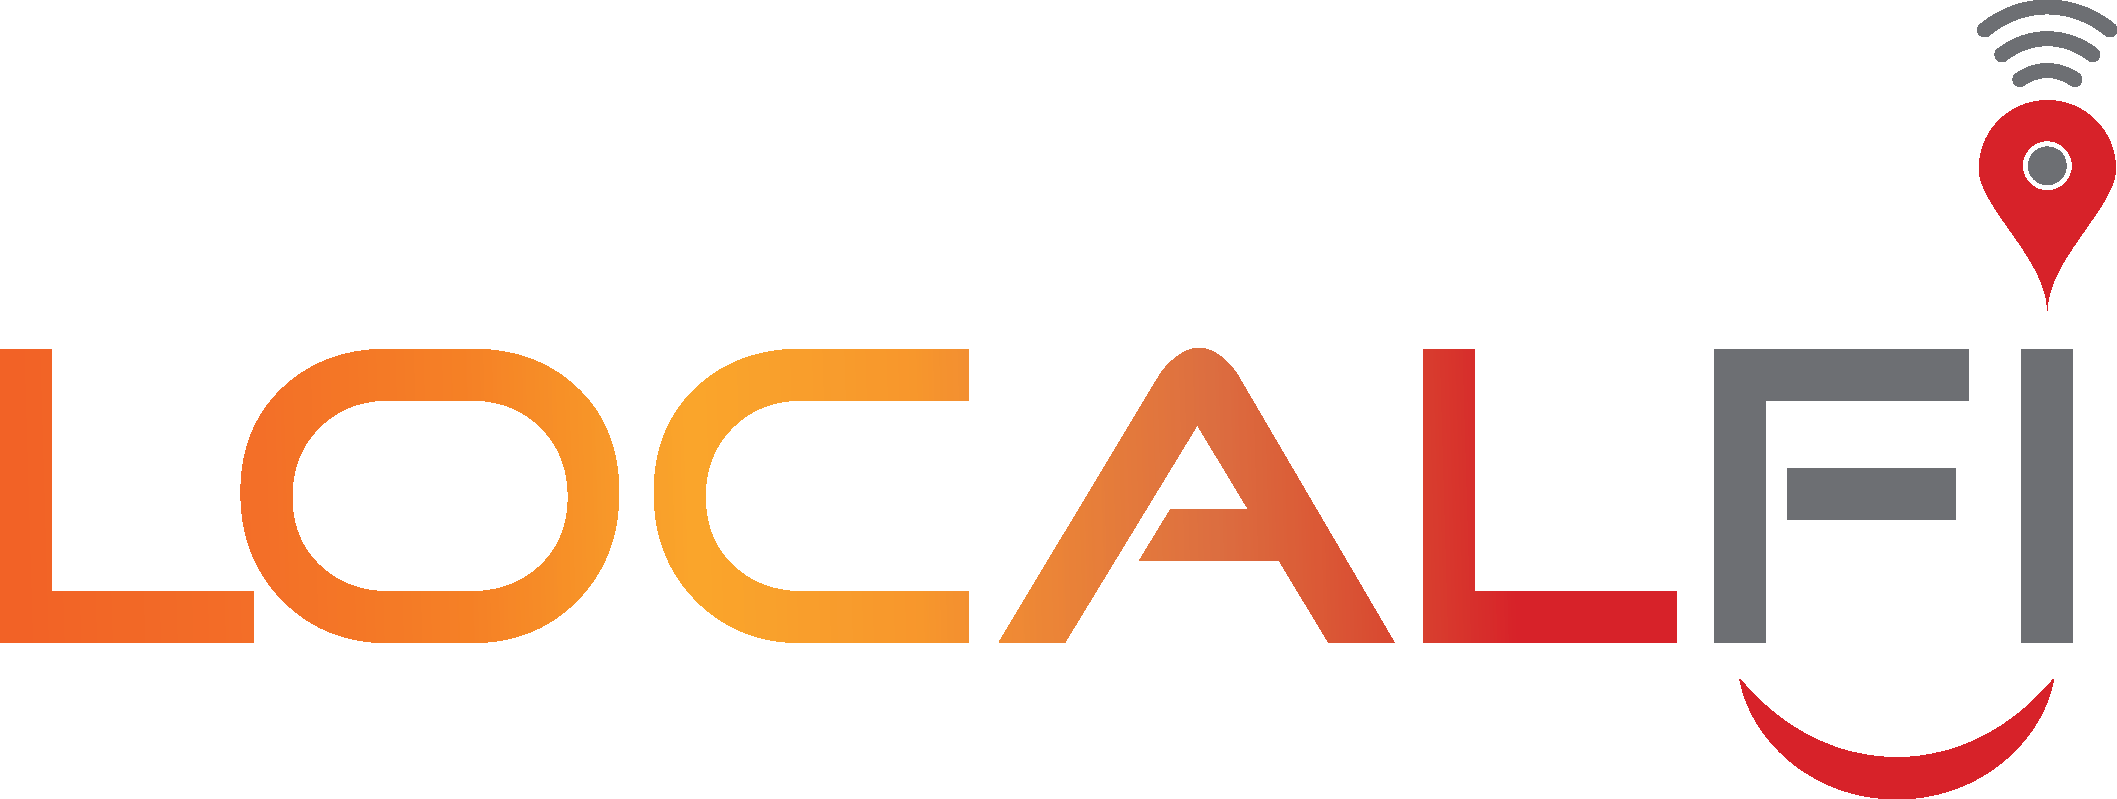 Localfi logo